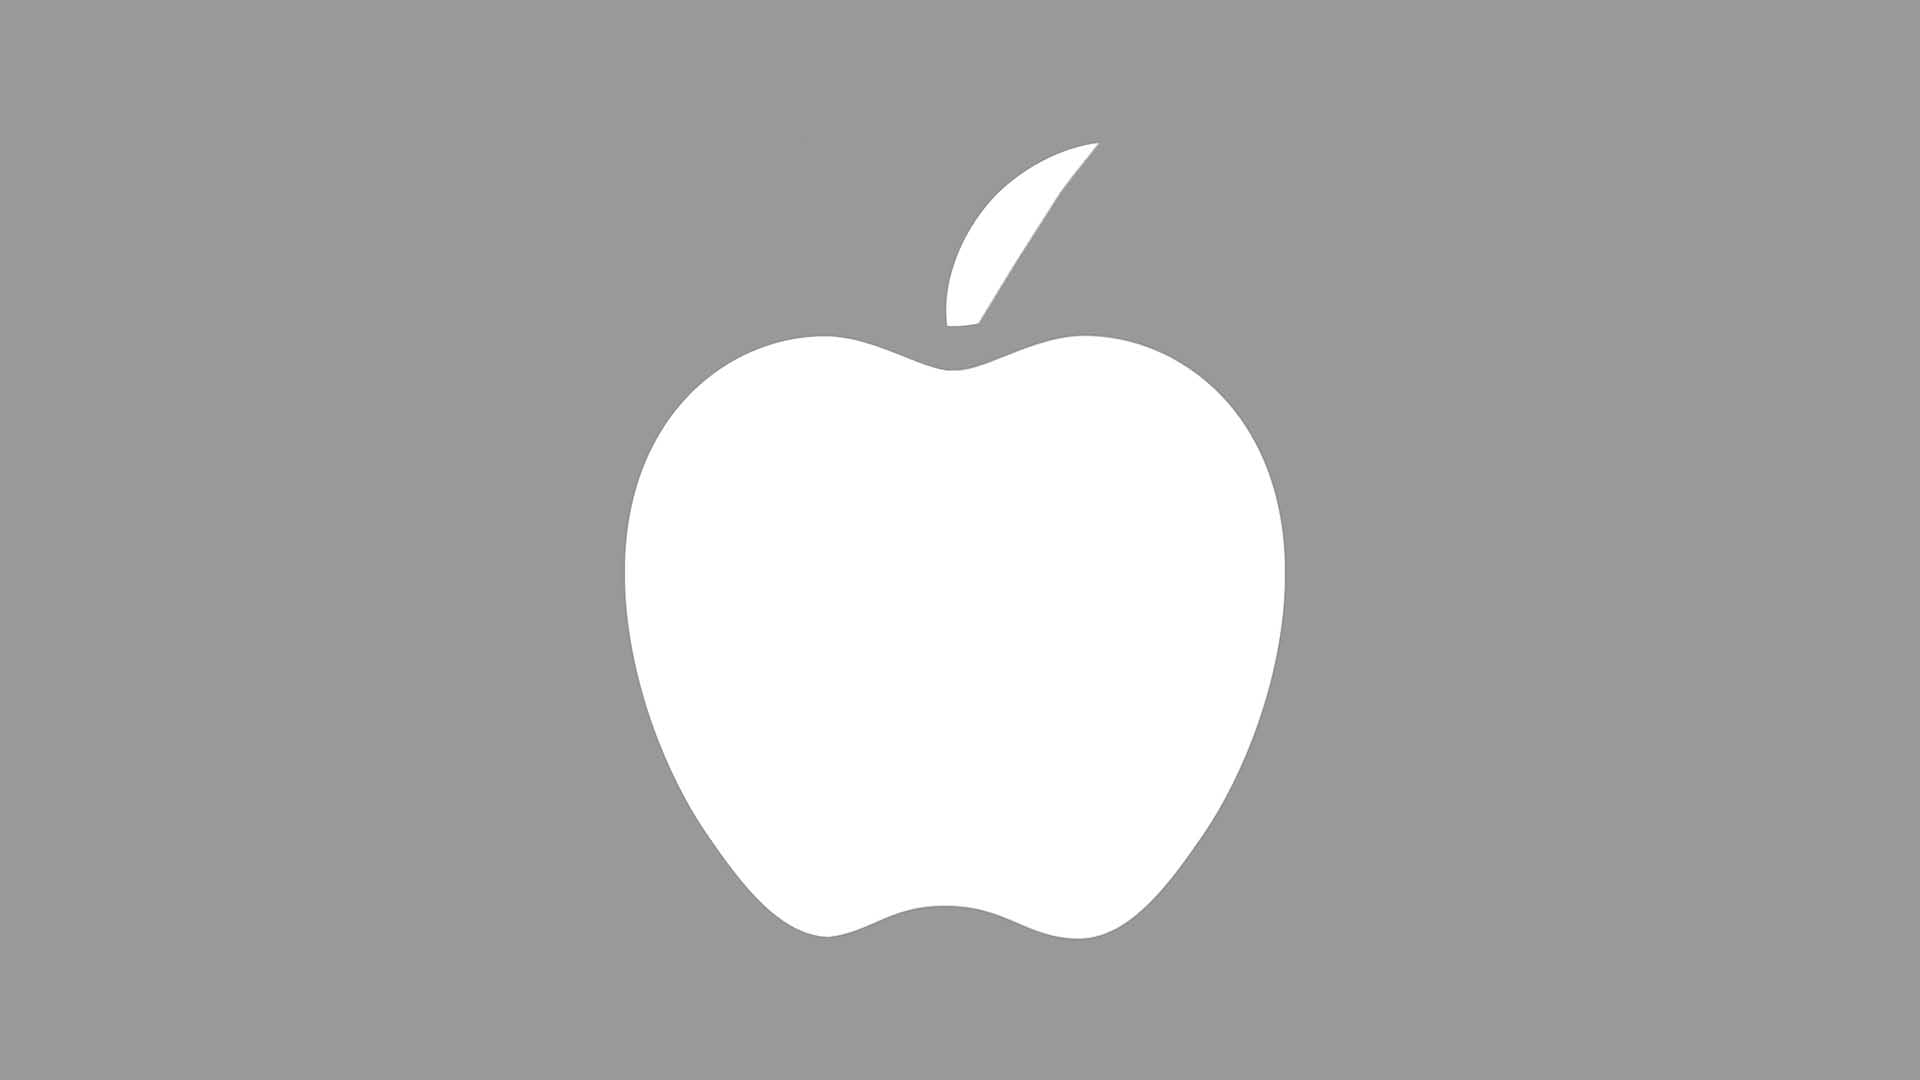 An apple logo